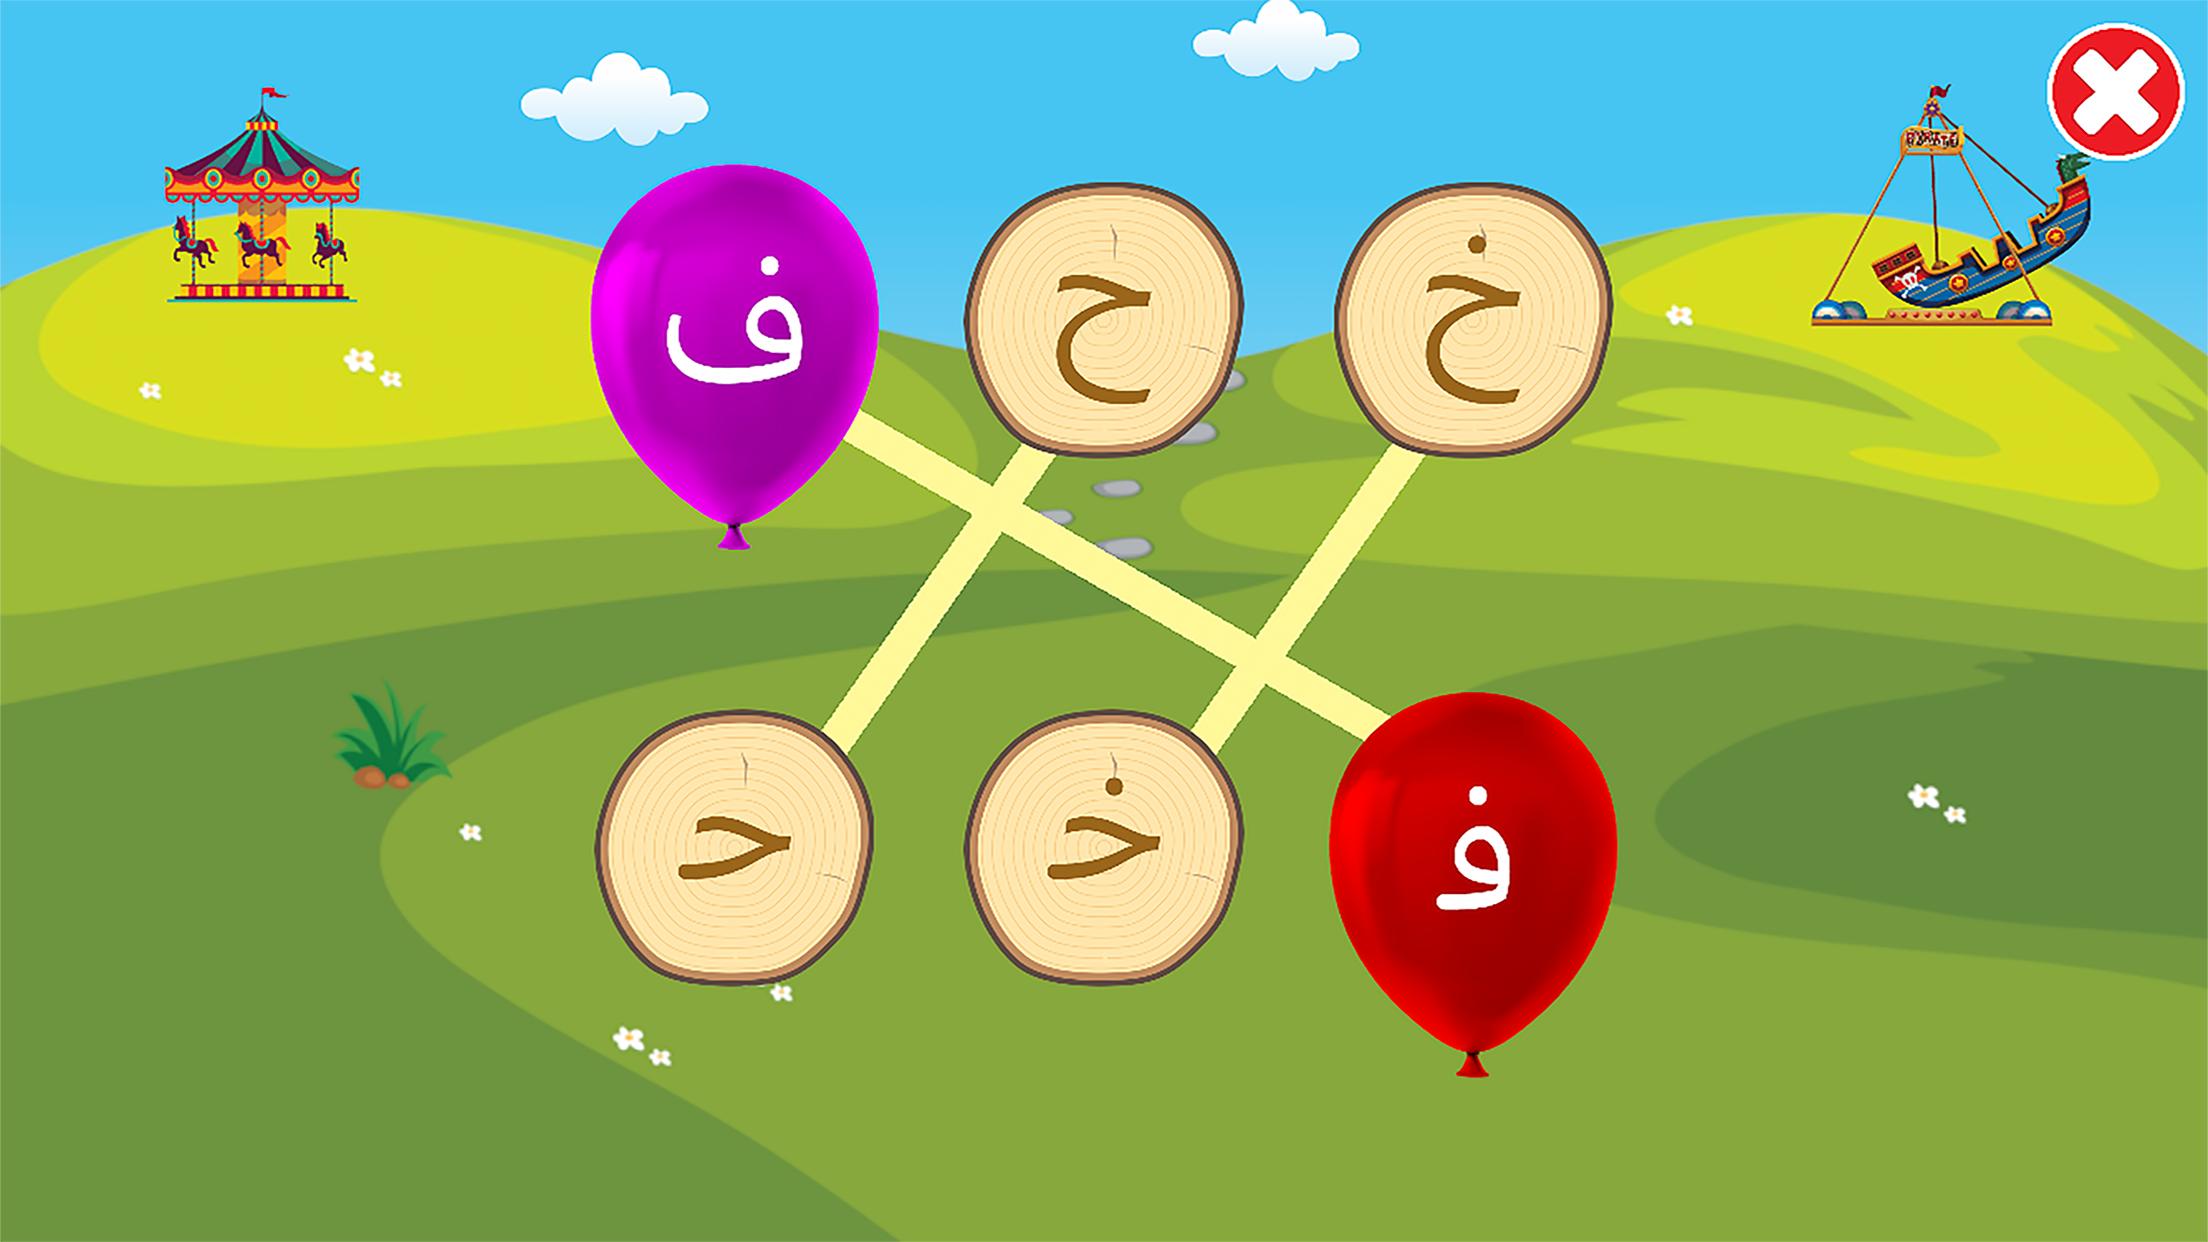 الفبای فارسی کودکان (Farsi alphabet game) 1.11.2 Screenshot 5